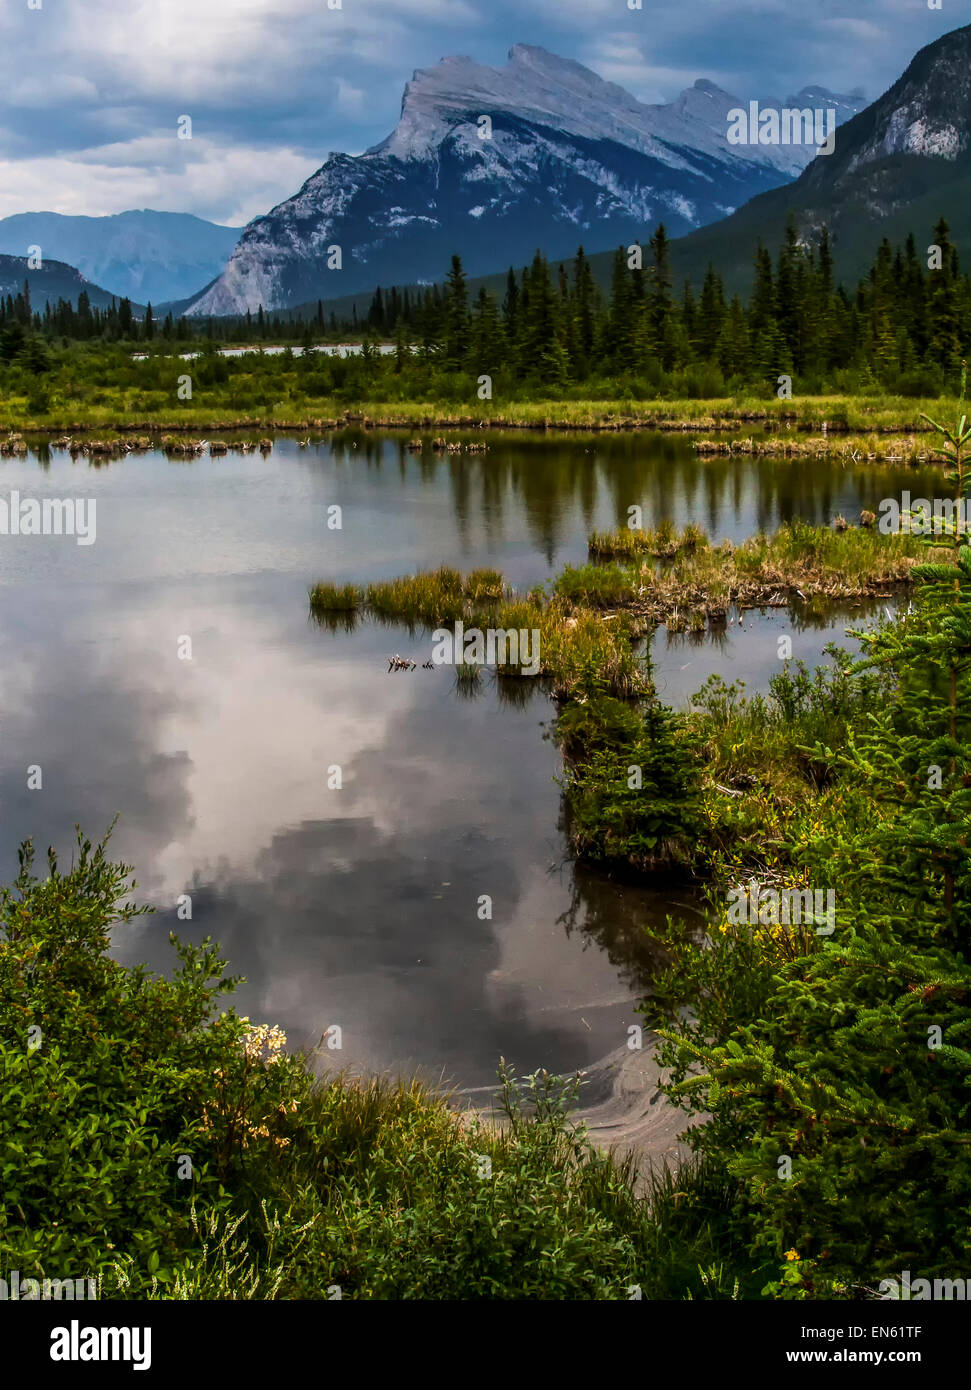 En la orilla del lago Vermillion en la base del Monte Rundle, Parque Nacional de Banff, Alberta, Canadá Foto de stock